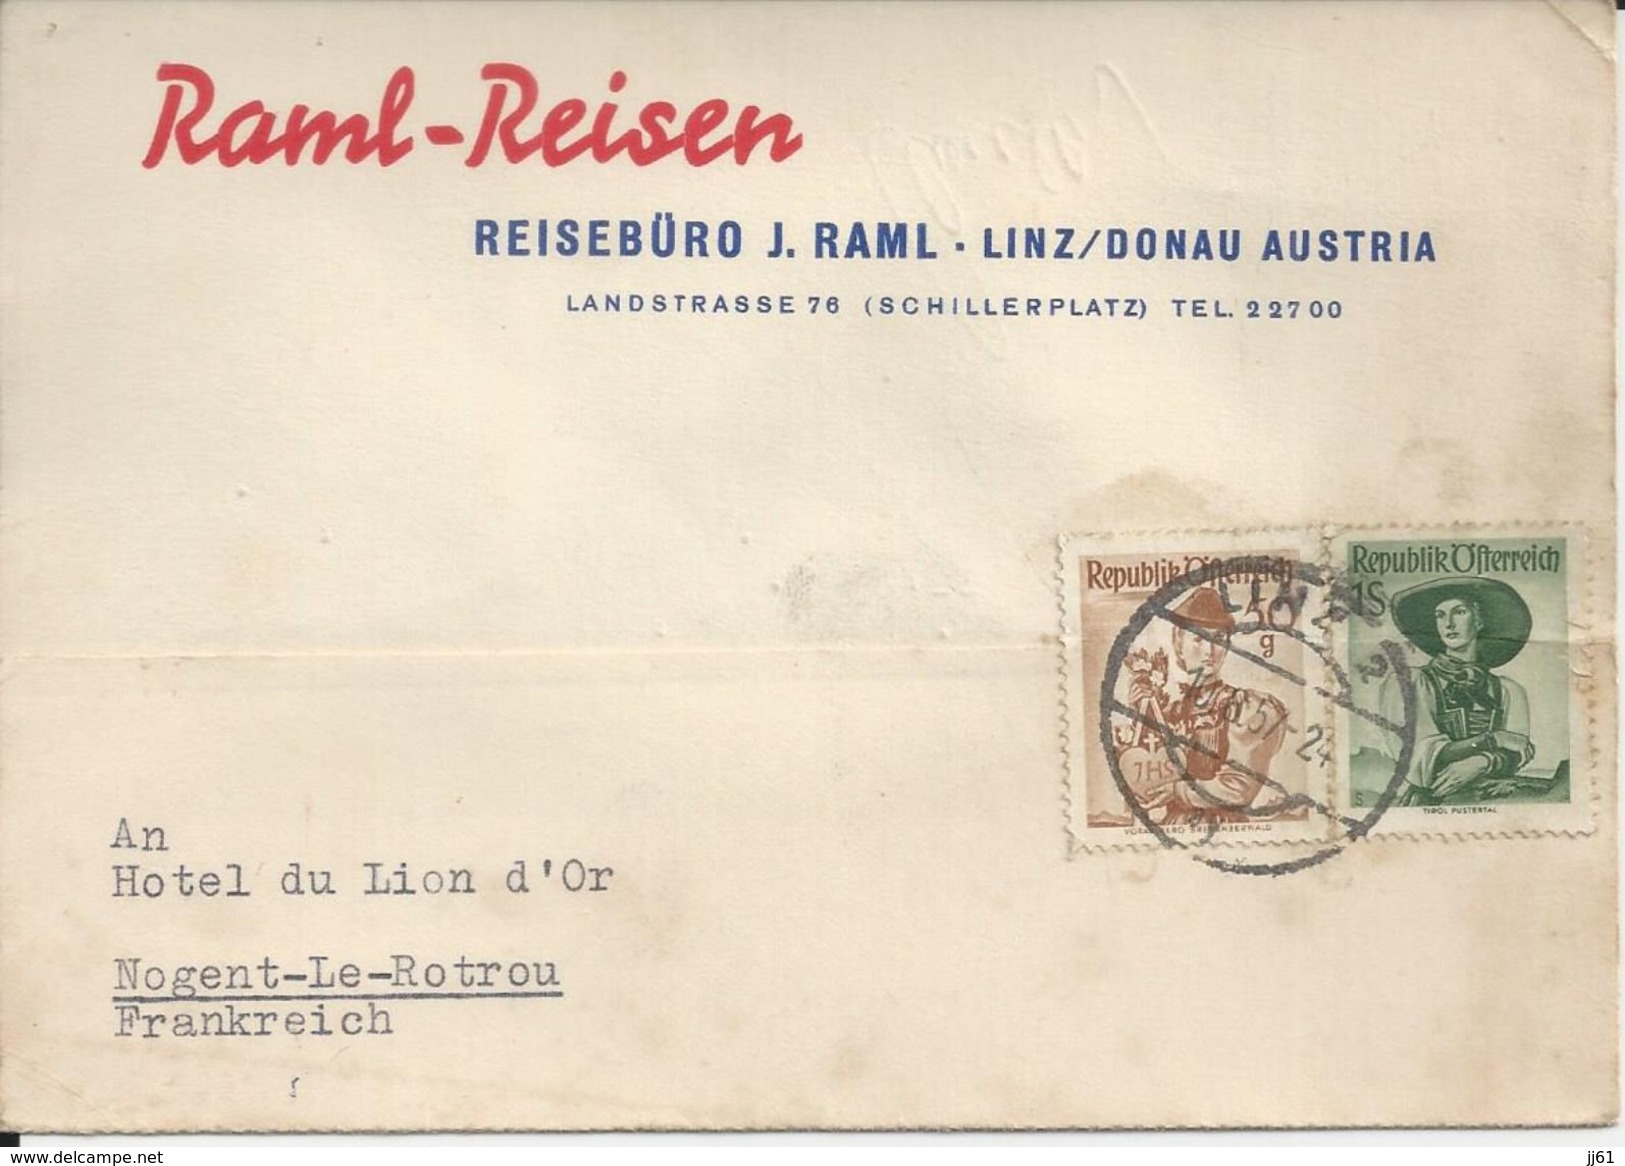 AUTRICHE RAIML REISEN REISEBURO J RAML LINZ DONAU CARTE ENVOYE A NOGENT LE ROTROU A L HOTEL DU LION D OR ANNEE 1957 - Autriche